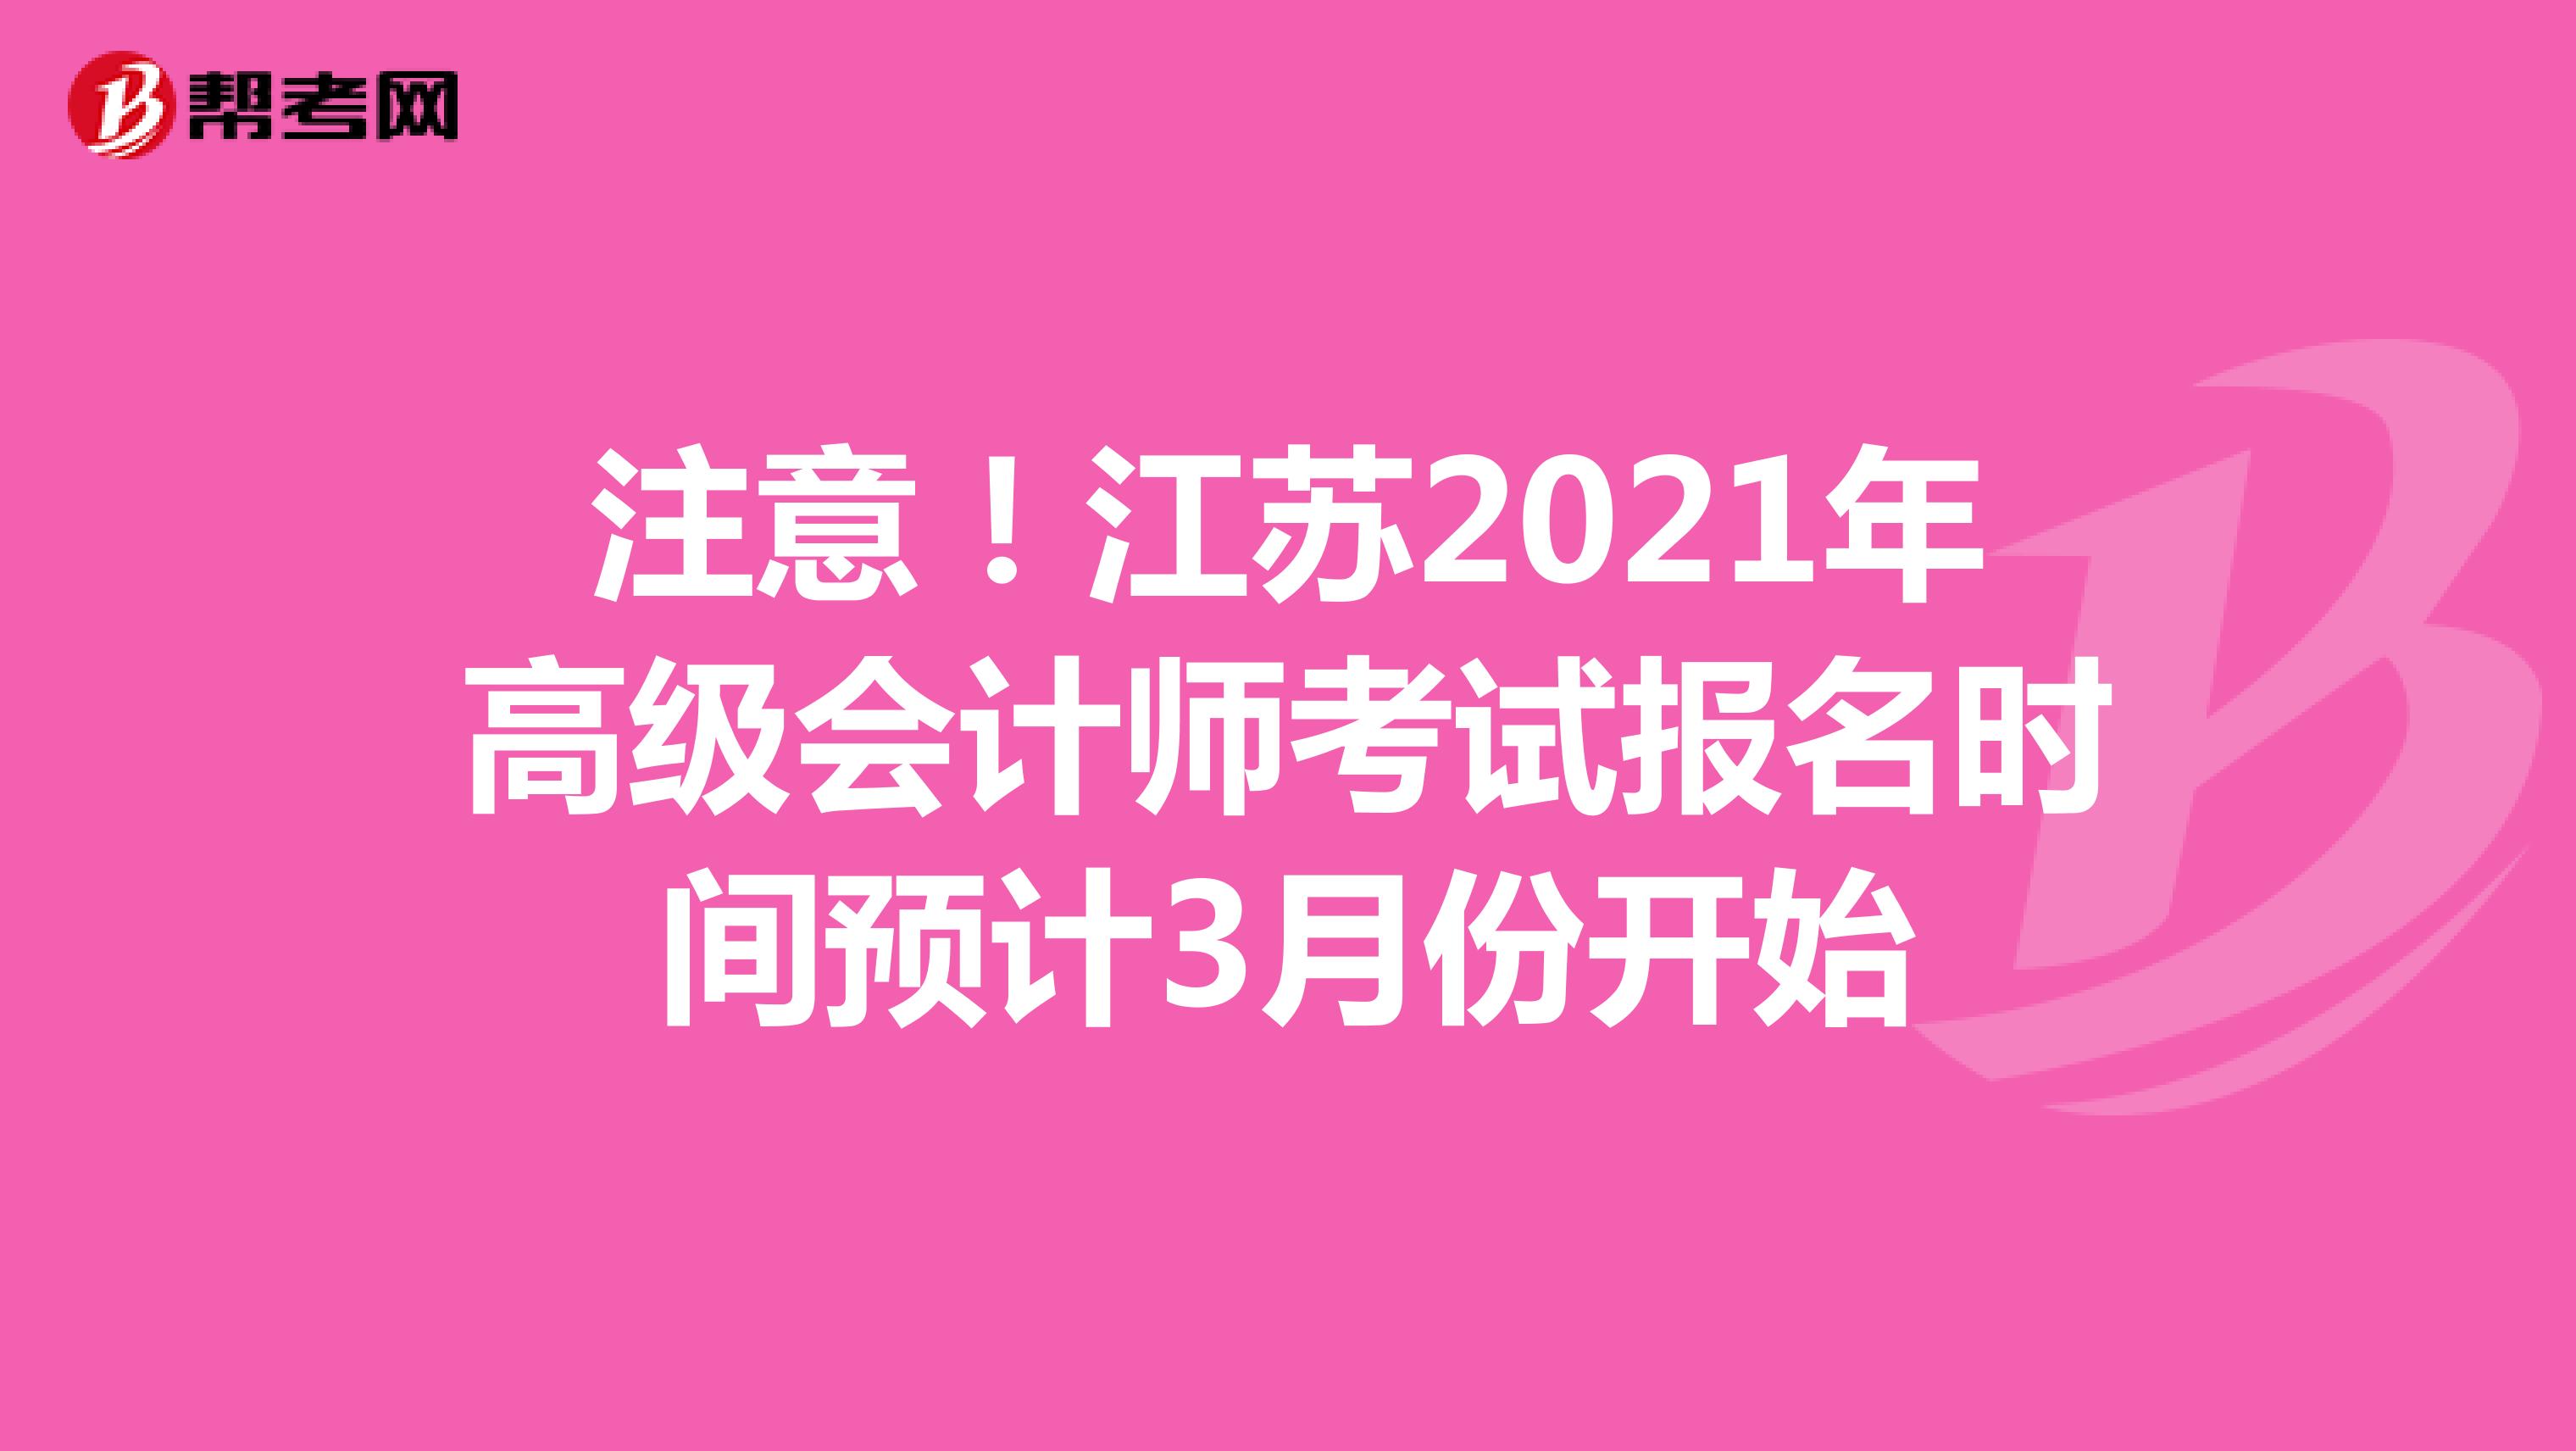 注意！江苏2021年高级会计师考试报名时间预计3月份开始